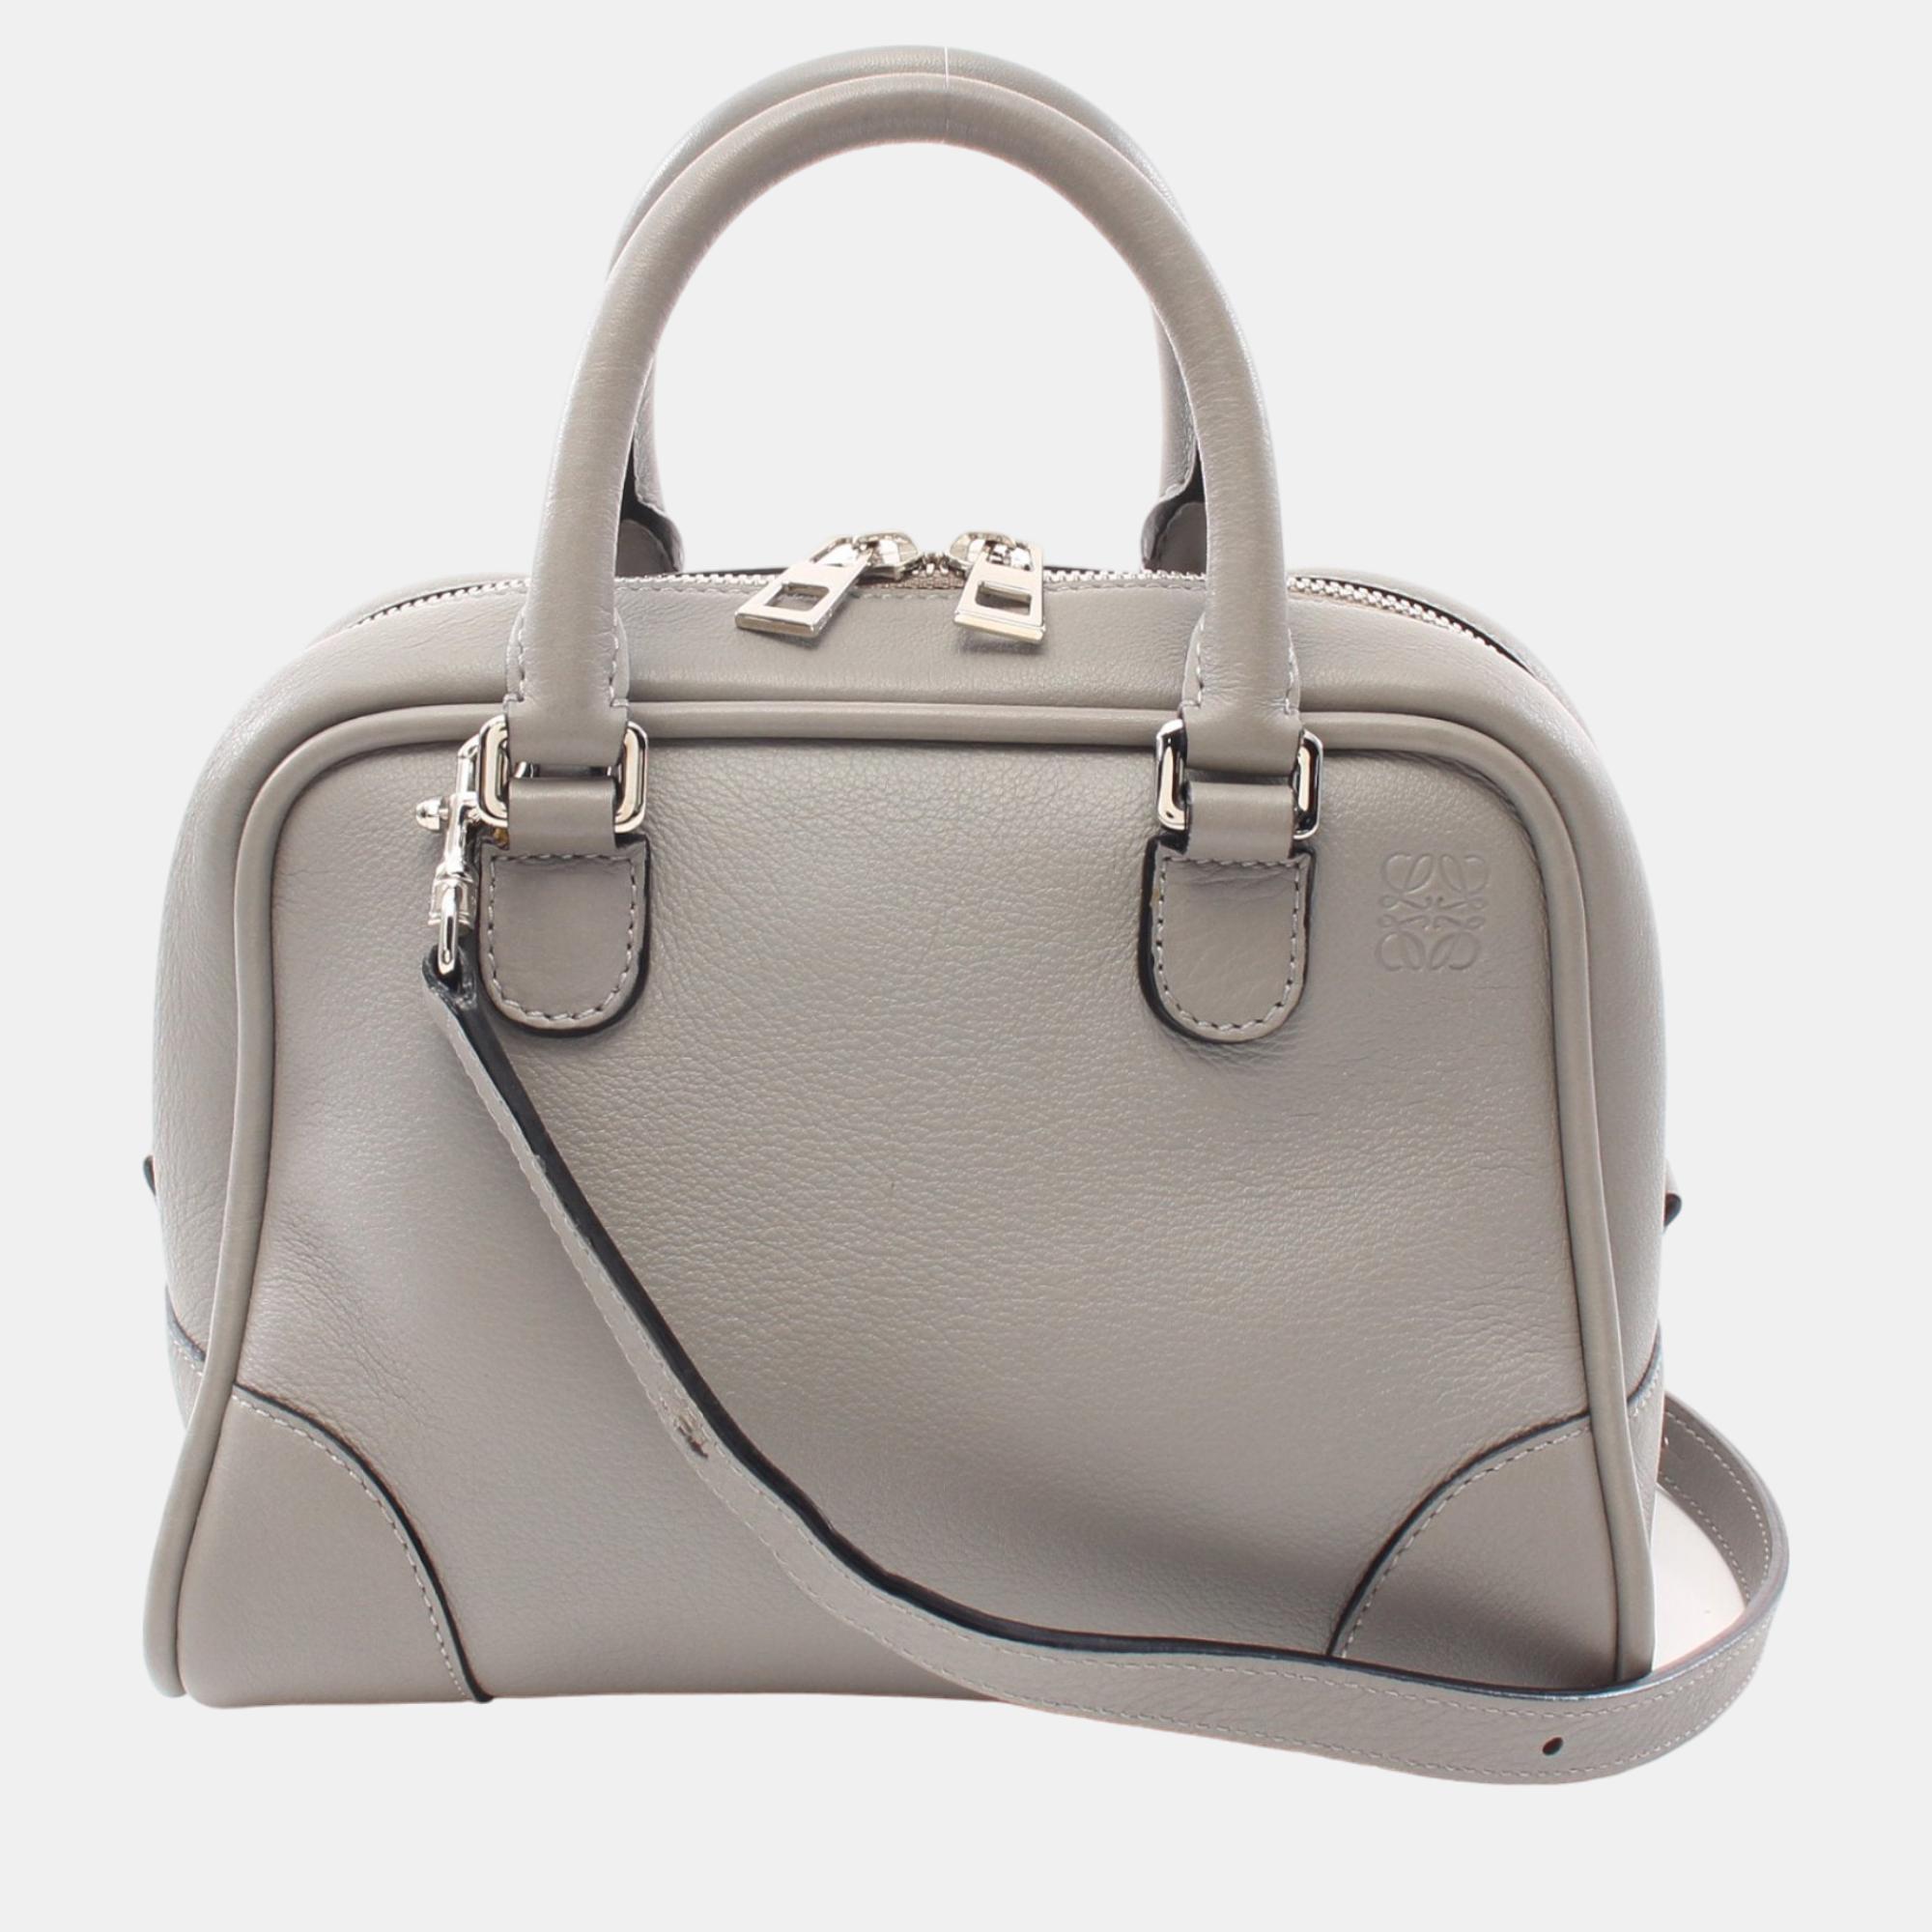 

Loewe Amazona75 Handbag Leather Gray 2WAY, Grey